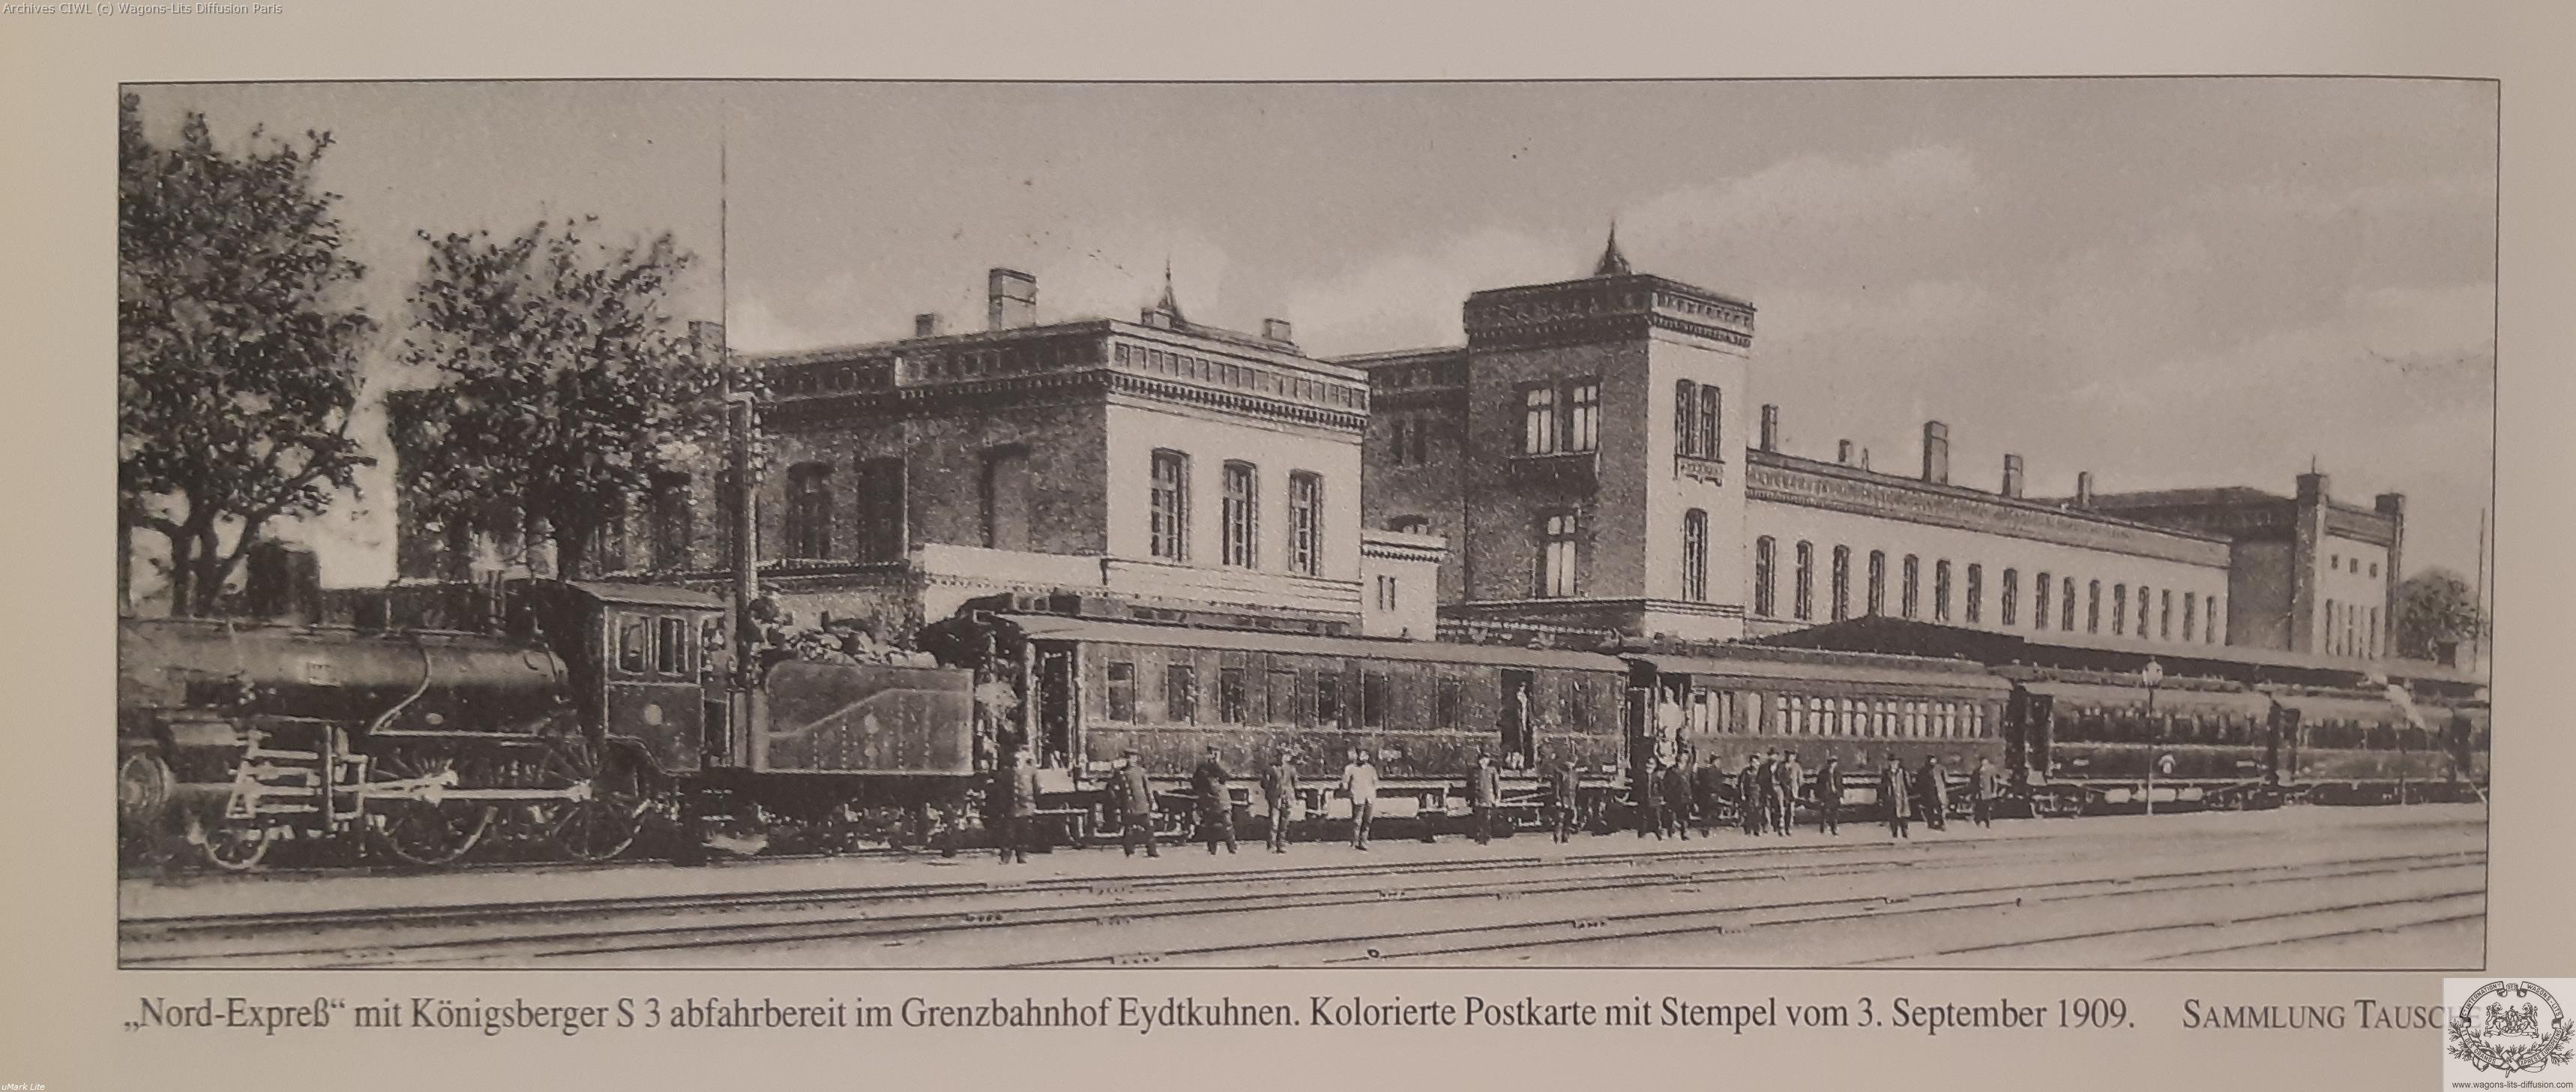 Wl nord express gare de grenz en 1909